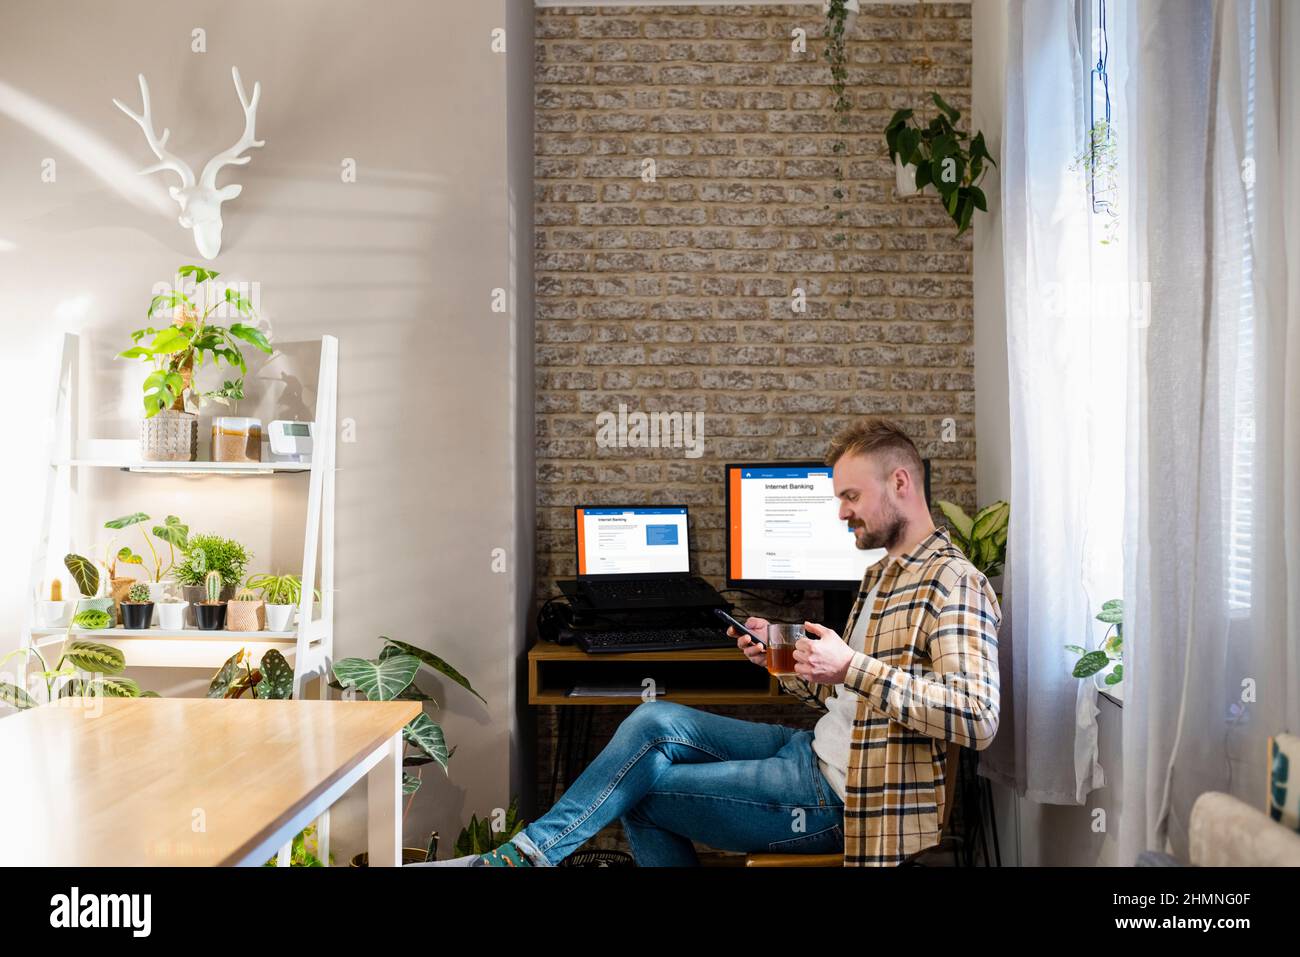 Uno scatto di una scrivania da ufficio domestico con due monitor, internet banking è visualizzato sullo schermo. Un uomo è seduto usando il suo telefono alla sua scrivania. Foto Stock